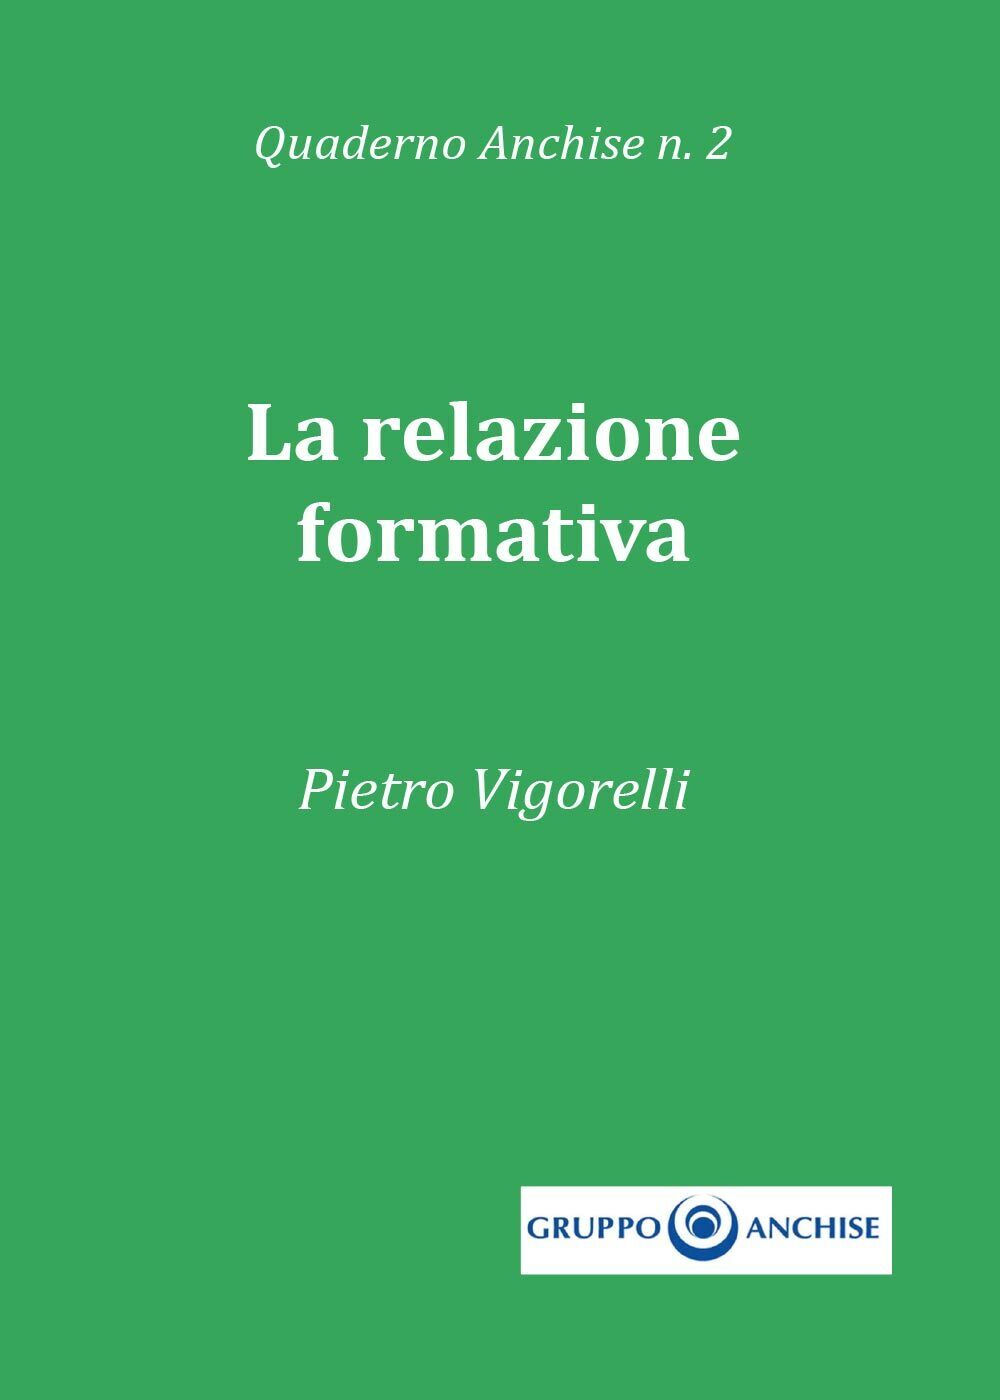 Quaderno Anchise n.2 La relazione formativa  di Pietro Enzo Vigorelli,  2017